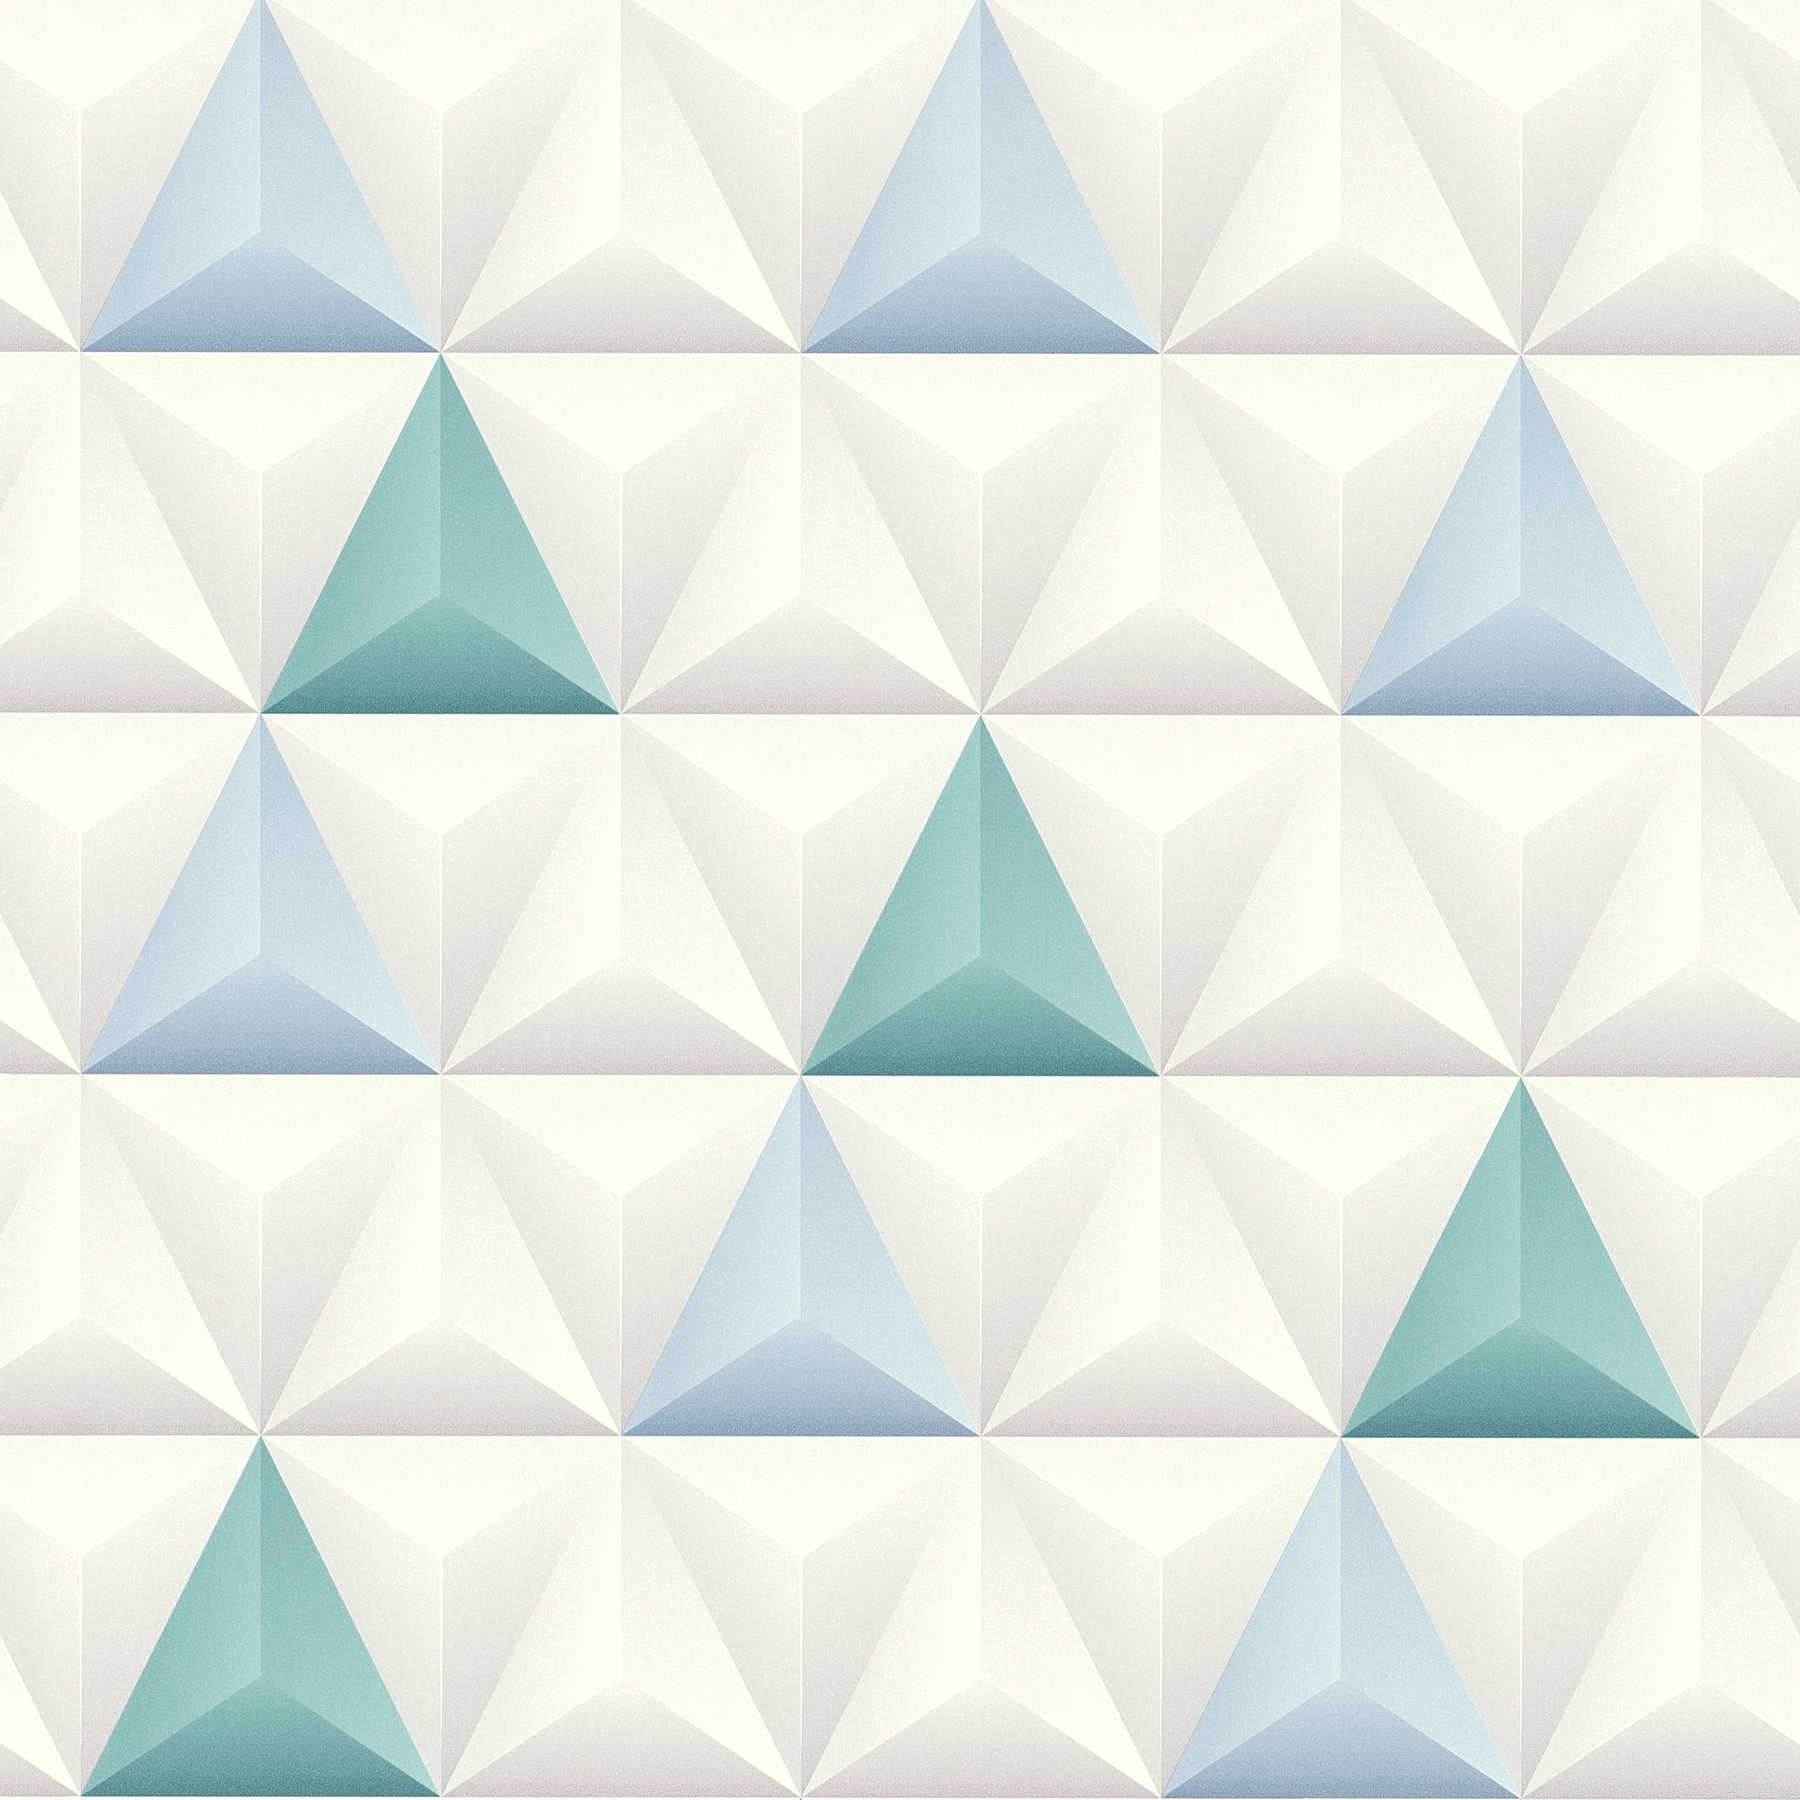         Moderne 3D Tapete Grafik Pyramiden Design – Blau, Weiß
    